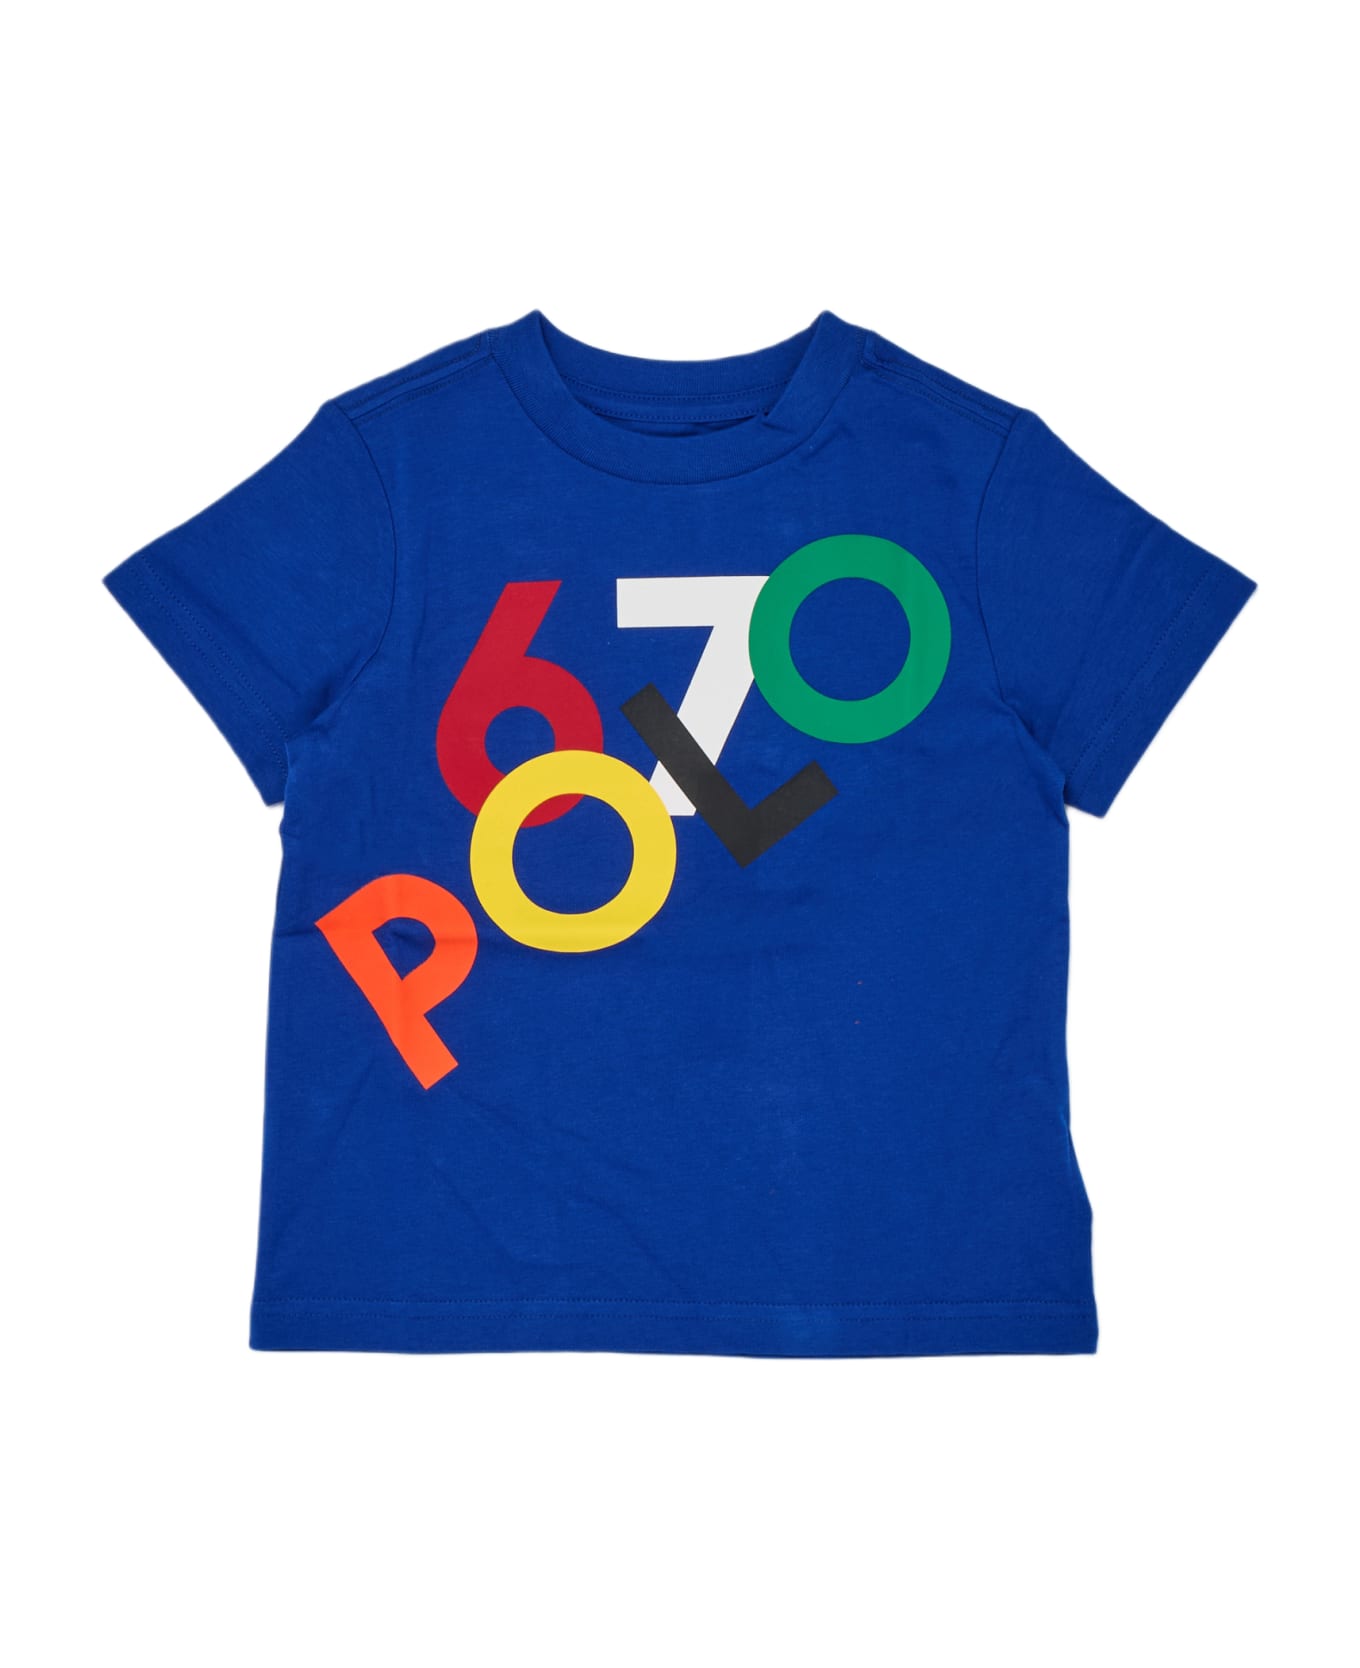 Polo Ralph Lauren T-shirt T-shirt - ROYAL